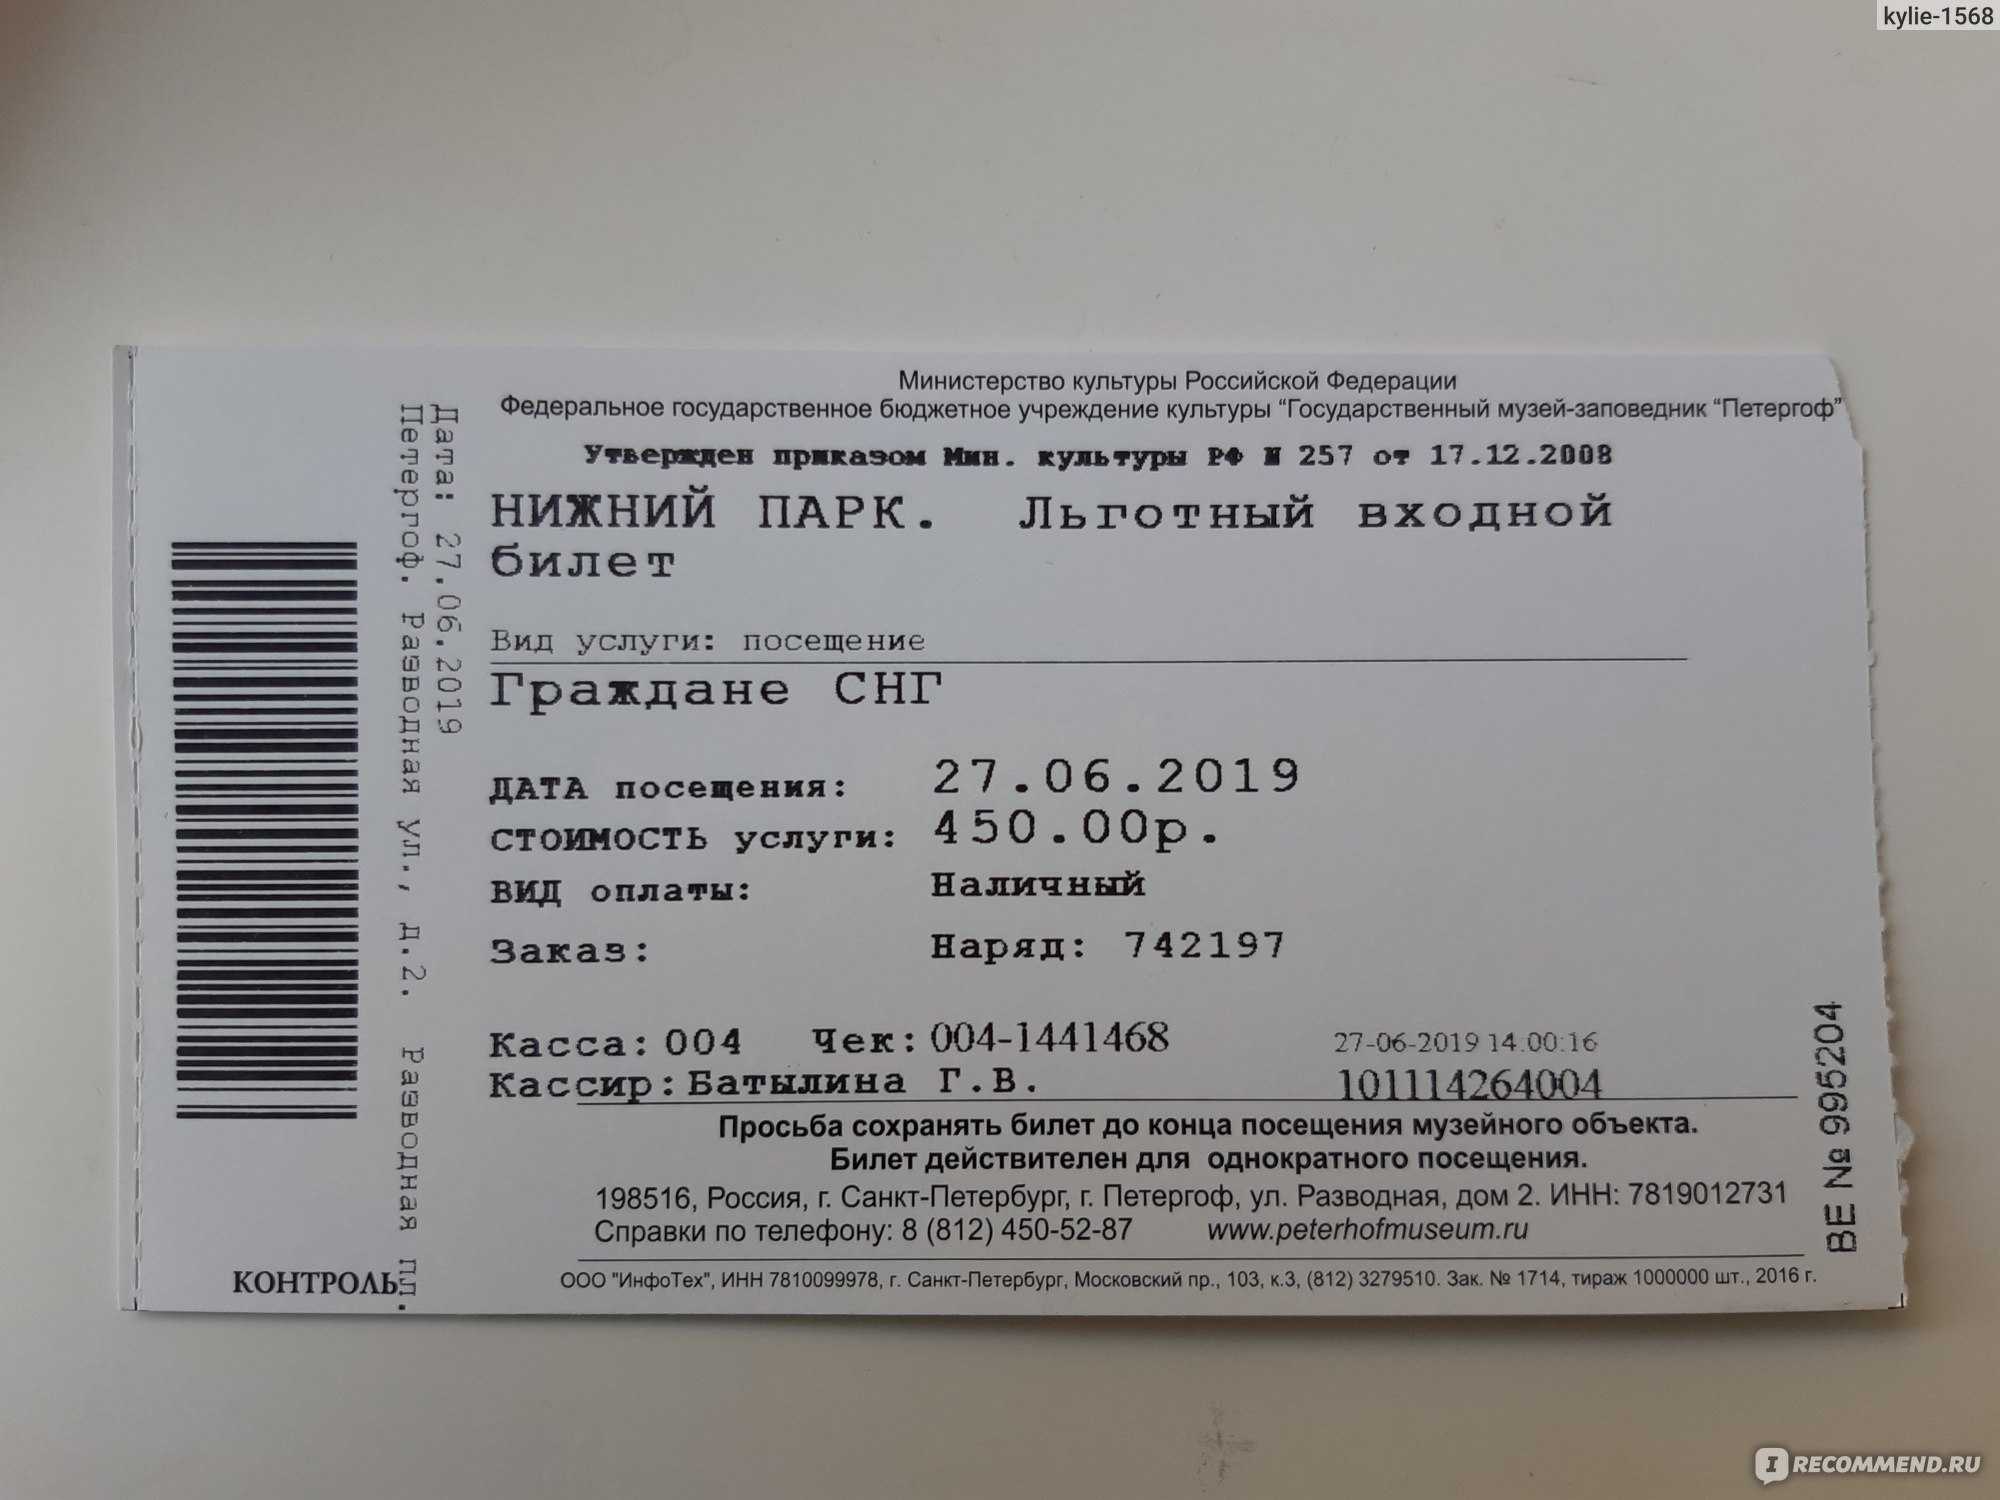 Как купить 2 билета по пушкинской. Петергоф билеты. Входной билет в Нижний парк Петергофа. Петергоф фонтаны билеты. Петергоф билеты в музей.